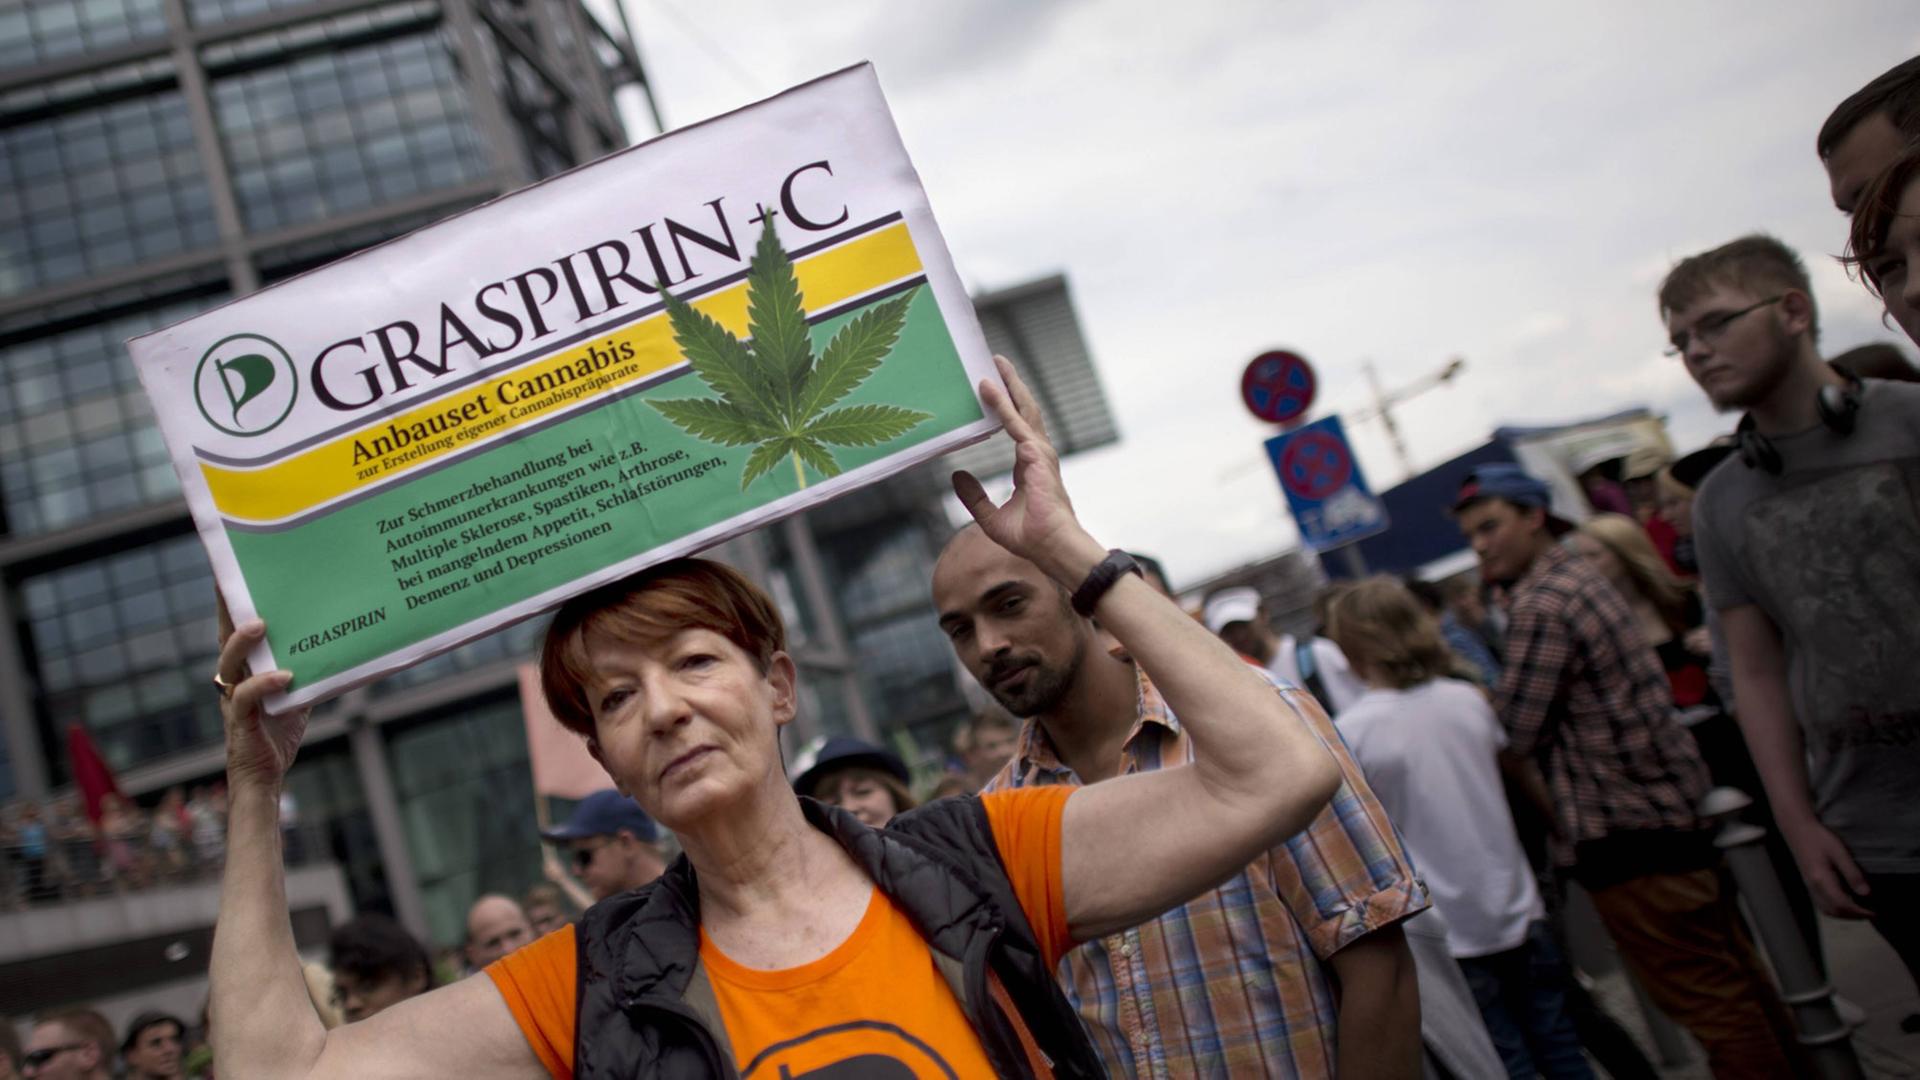 Teilnehmerin der Demonstration "Hanfparade" (Berlin) hält ein Plakat hoch, das einer Aspirin-Schachtel nachgeahmt ist.